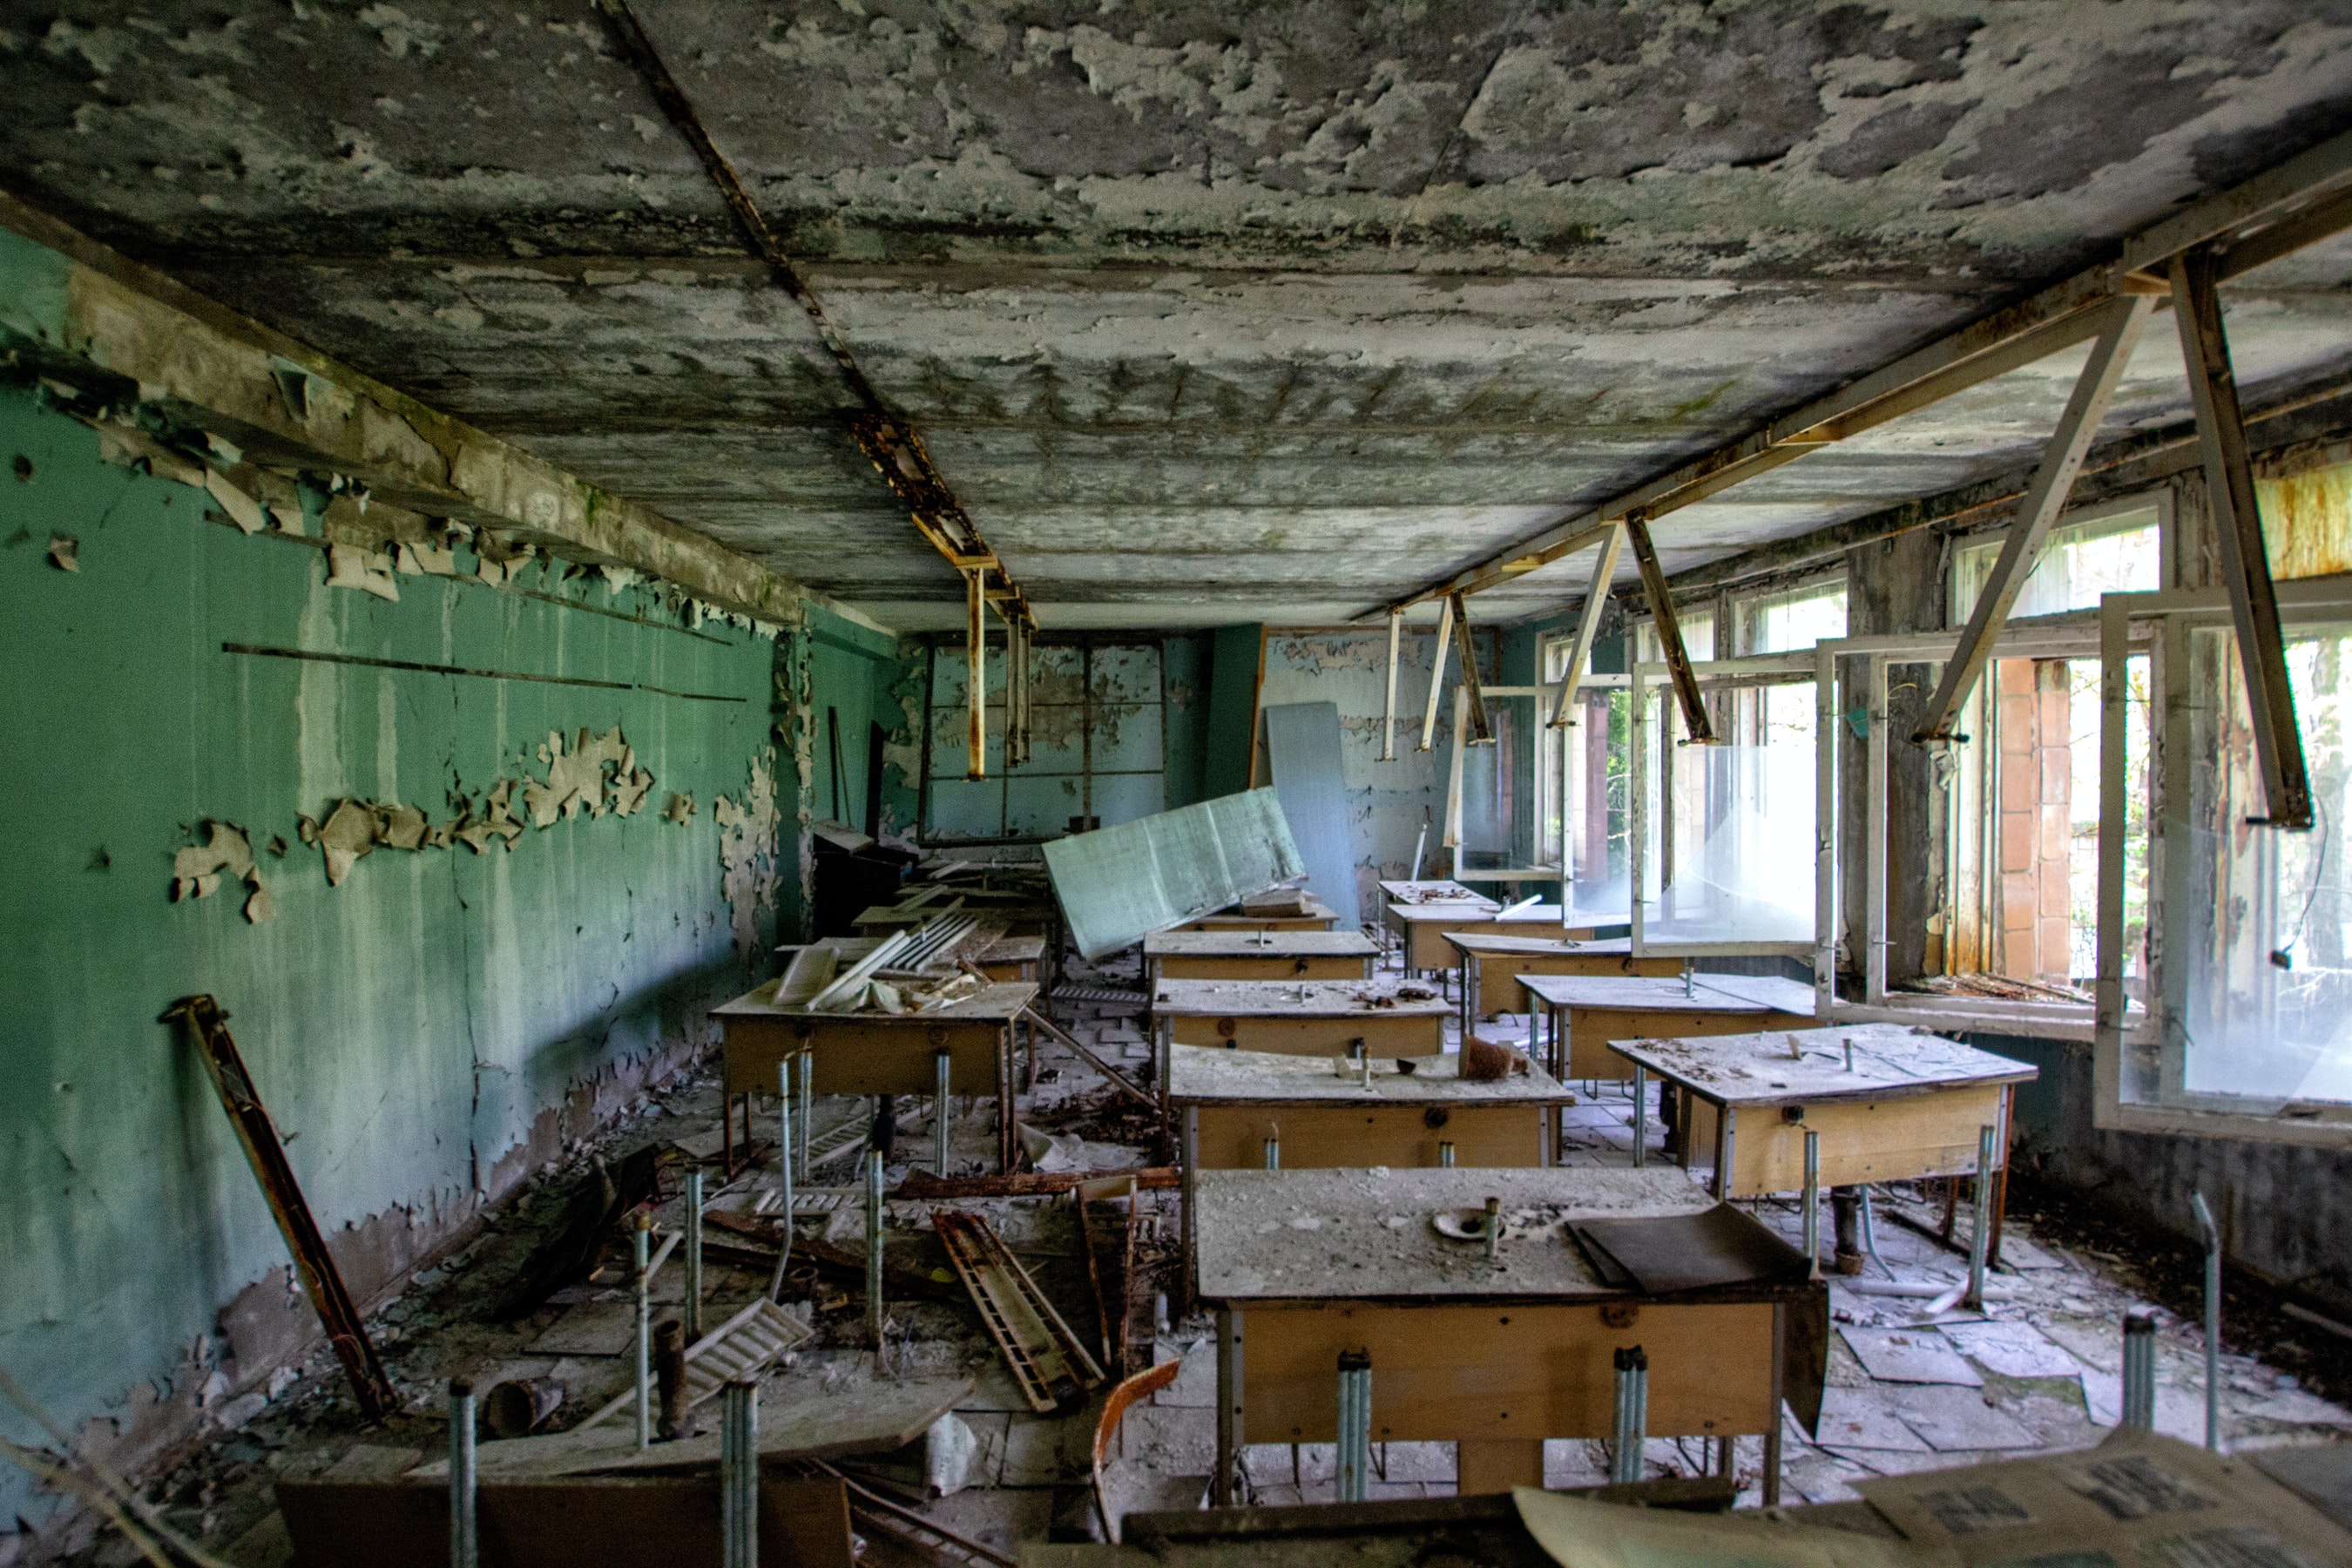 Mini-serie Chernobyl in 5 delen